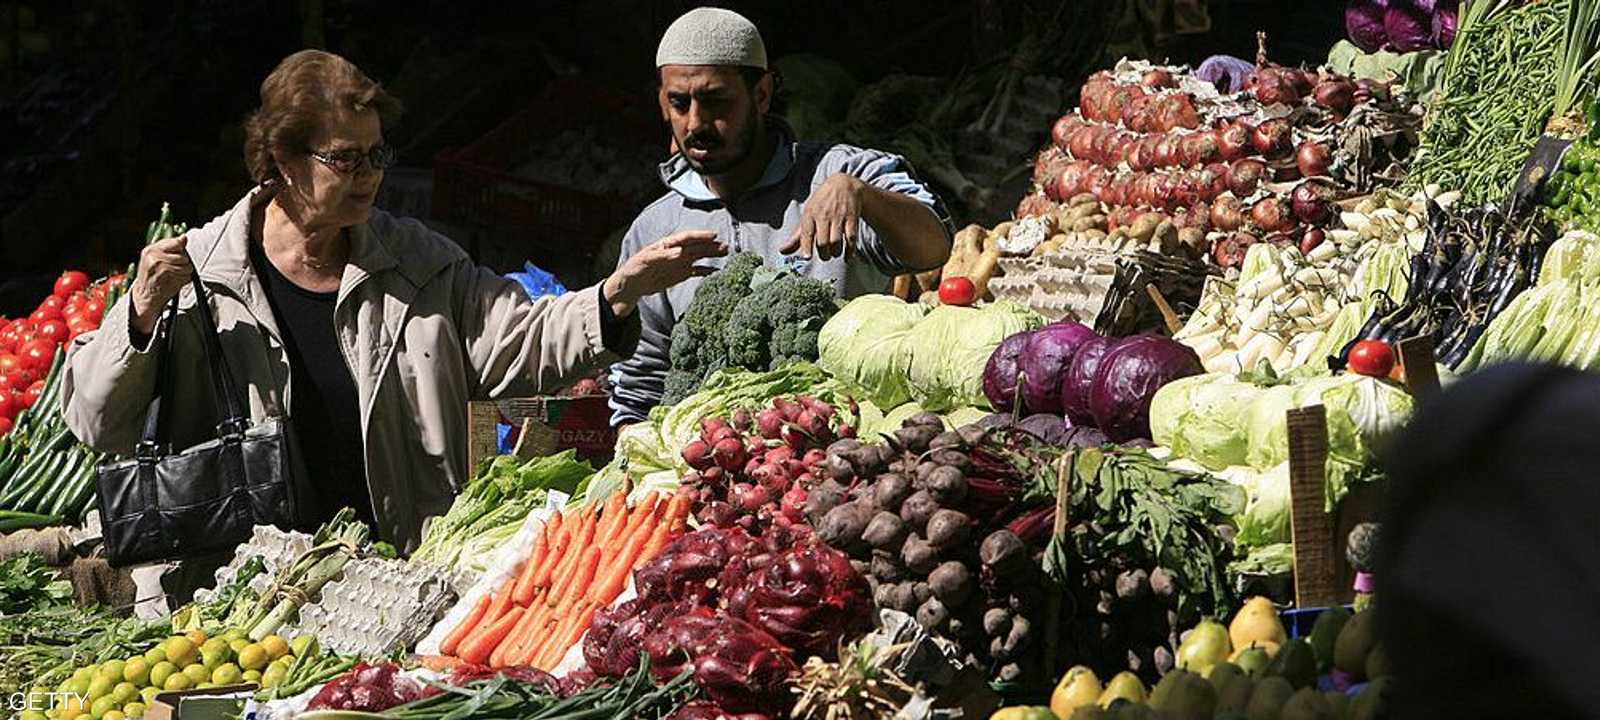 تسعى الحكومة المصرية للتصدي لارتفاع أسعار السلع الأساسية